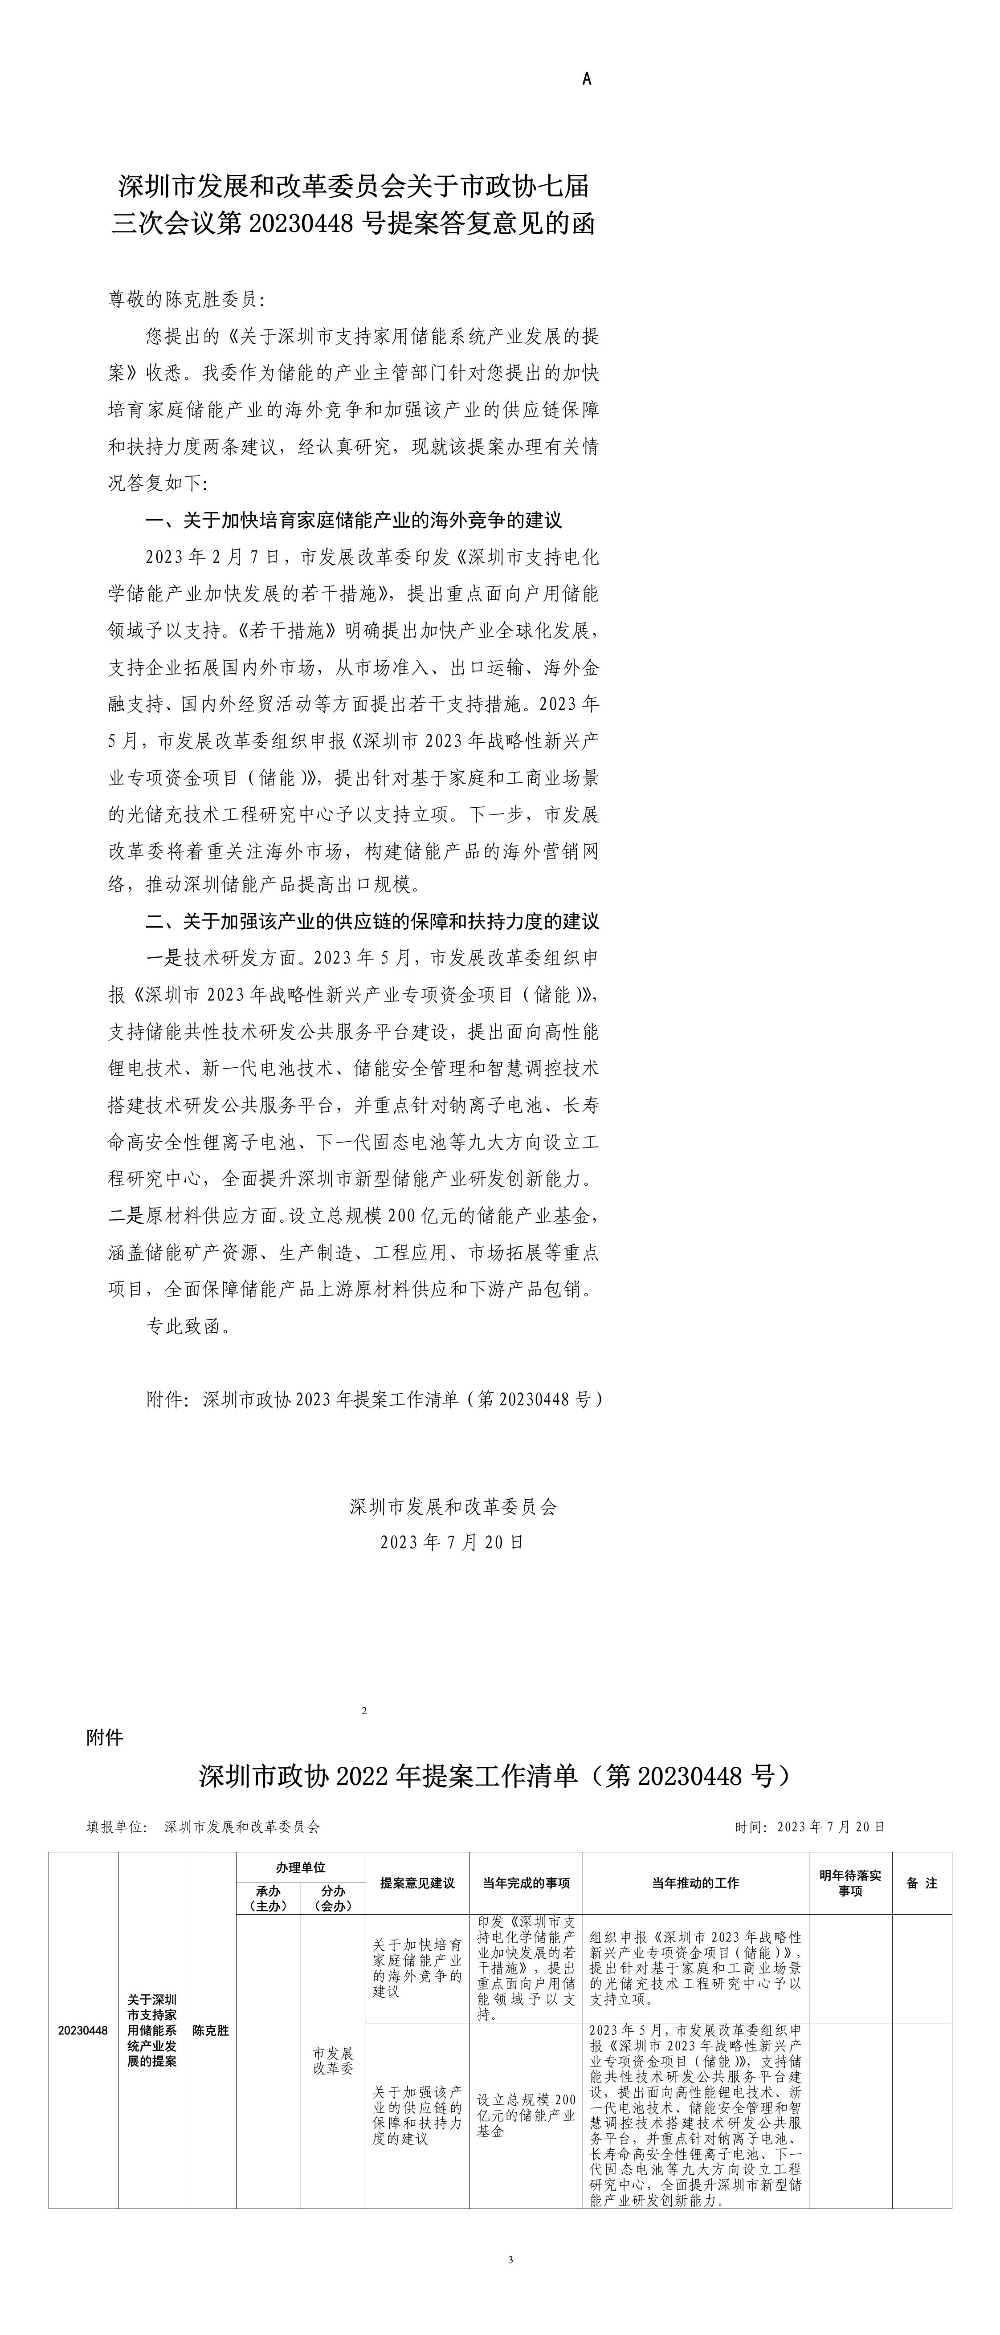 深圳市发展和改革委员会关于市政协七届三次会议第20230448号提案答复意见的函.jpg